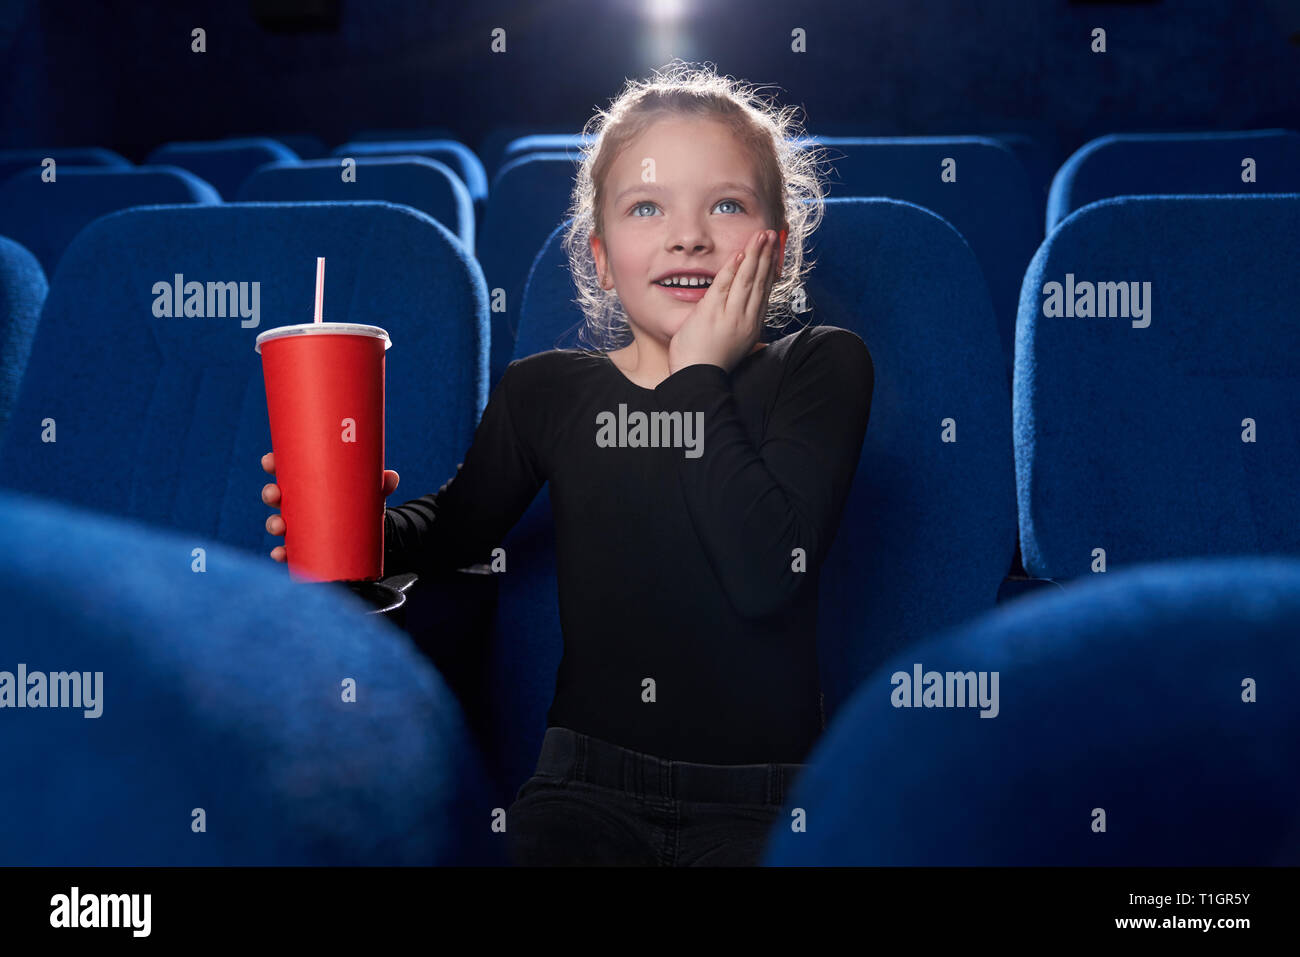 Kleine, süße Mädchen aufmerksam beobachten, Film in Kino Theater, halten roten Pappbecher mit kohlensäurehaltige Getränk in der Hand. Fasziniert Kind die Hand auf die Wange. Stockfoto